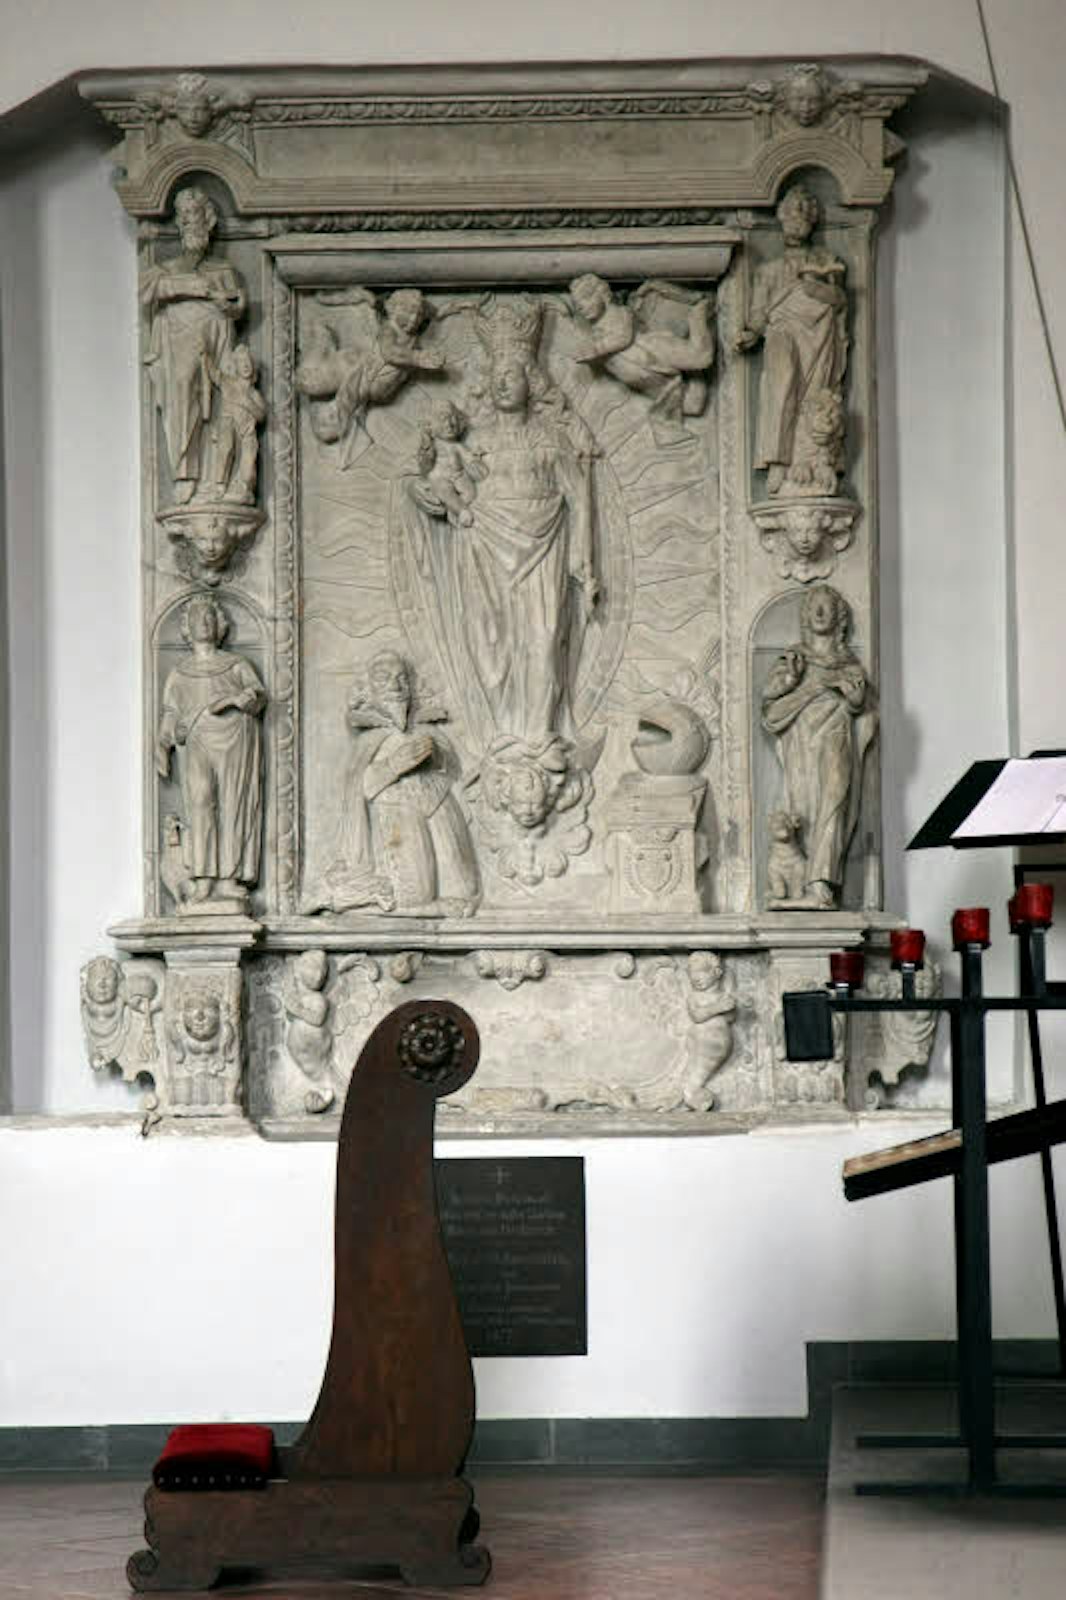 Das Steinrelief in der Kirche zeigt Adam von Schwarzenberg kniend vor der Muttergottes. Er war vieles: Sohn eines berühmten Kriegsherrn, einflussreicher Diplomat und Geheimer Rat sowie Heermeister des Johanniter-Orden.